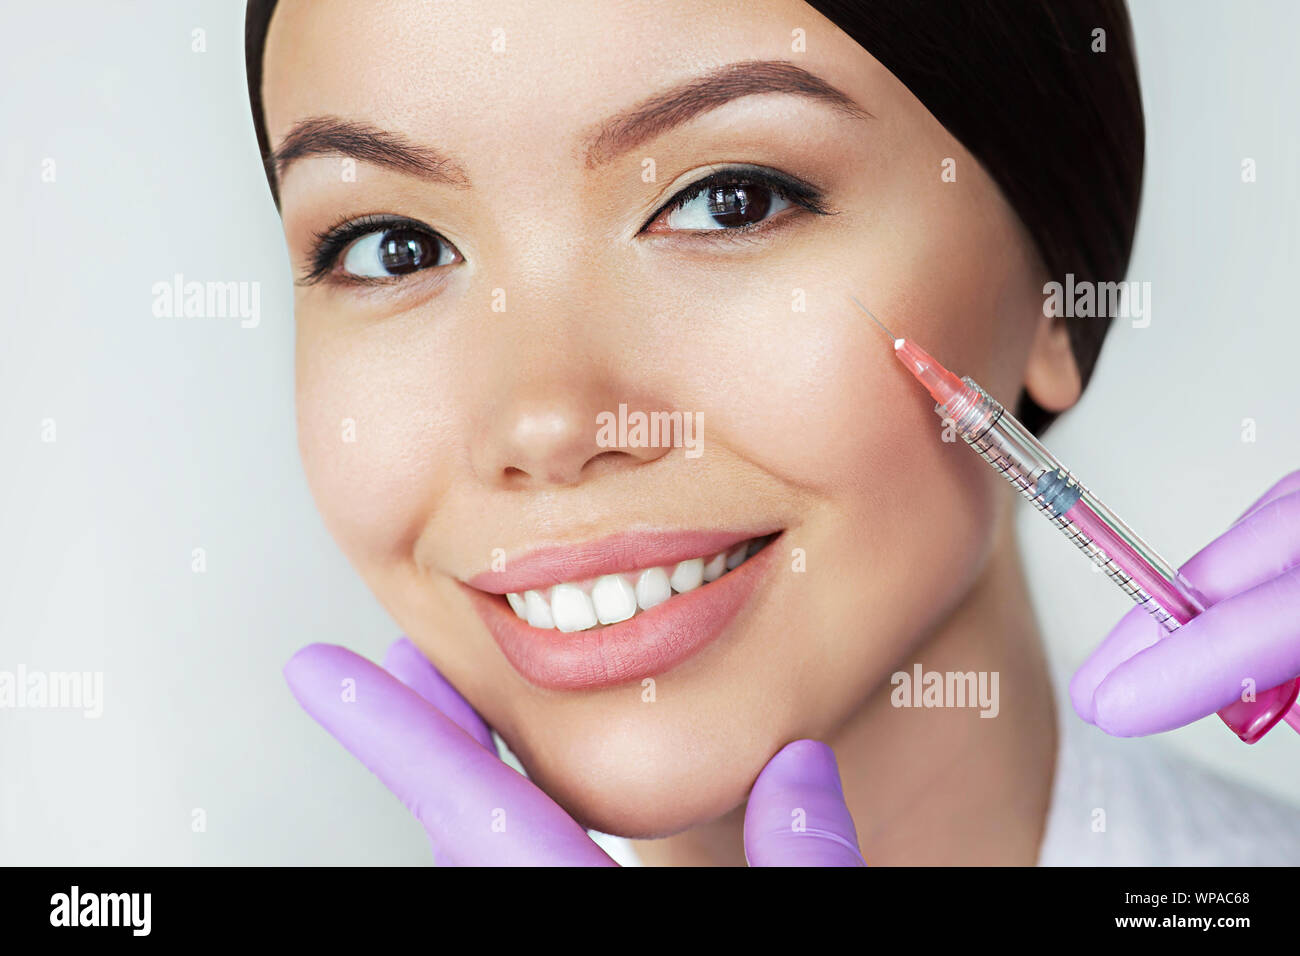 Bella donna asiatica ottiene iniezioni di bellezza. Close-up iniezione di anti-invecchiamento e rughe perfetto volto femminile Foto Stock